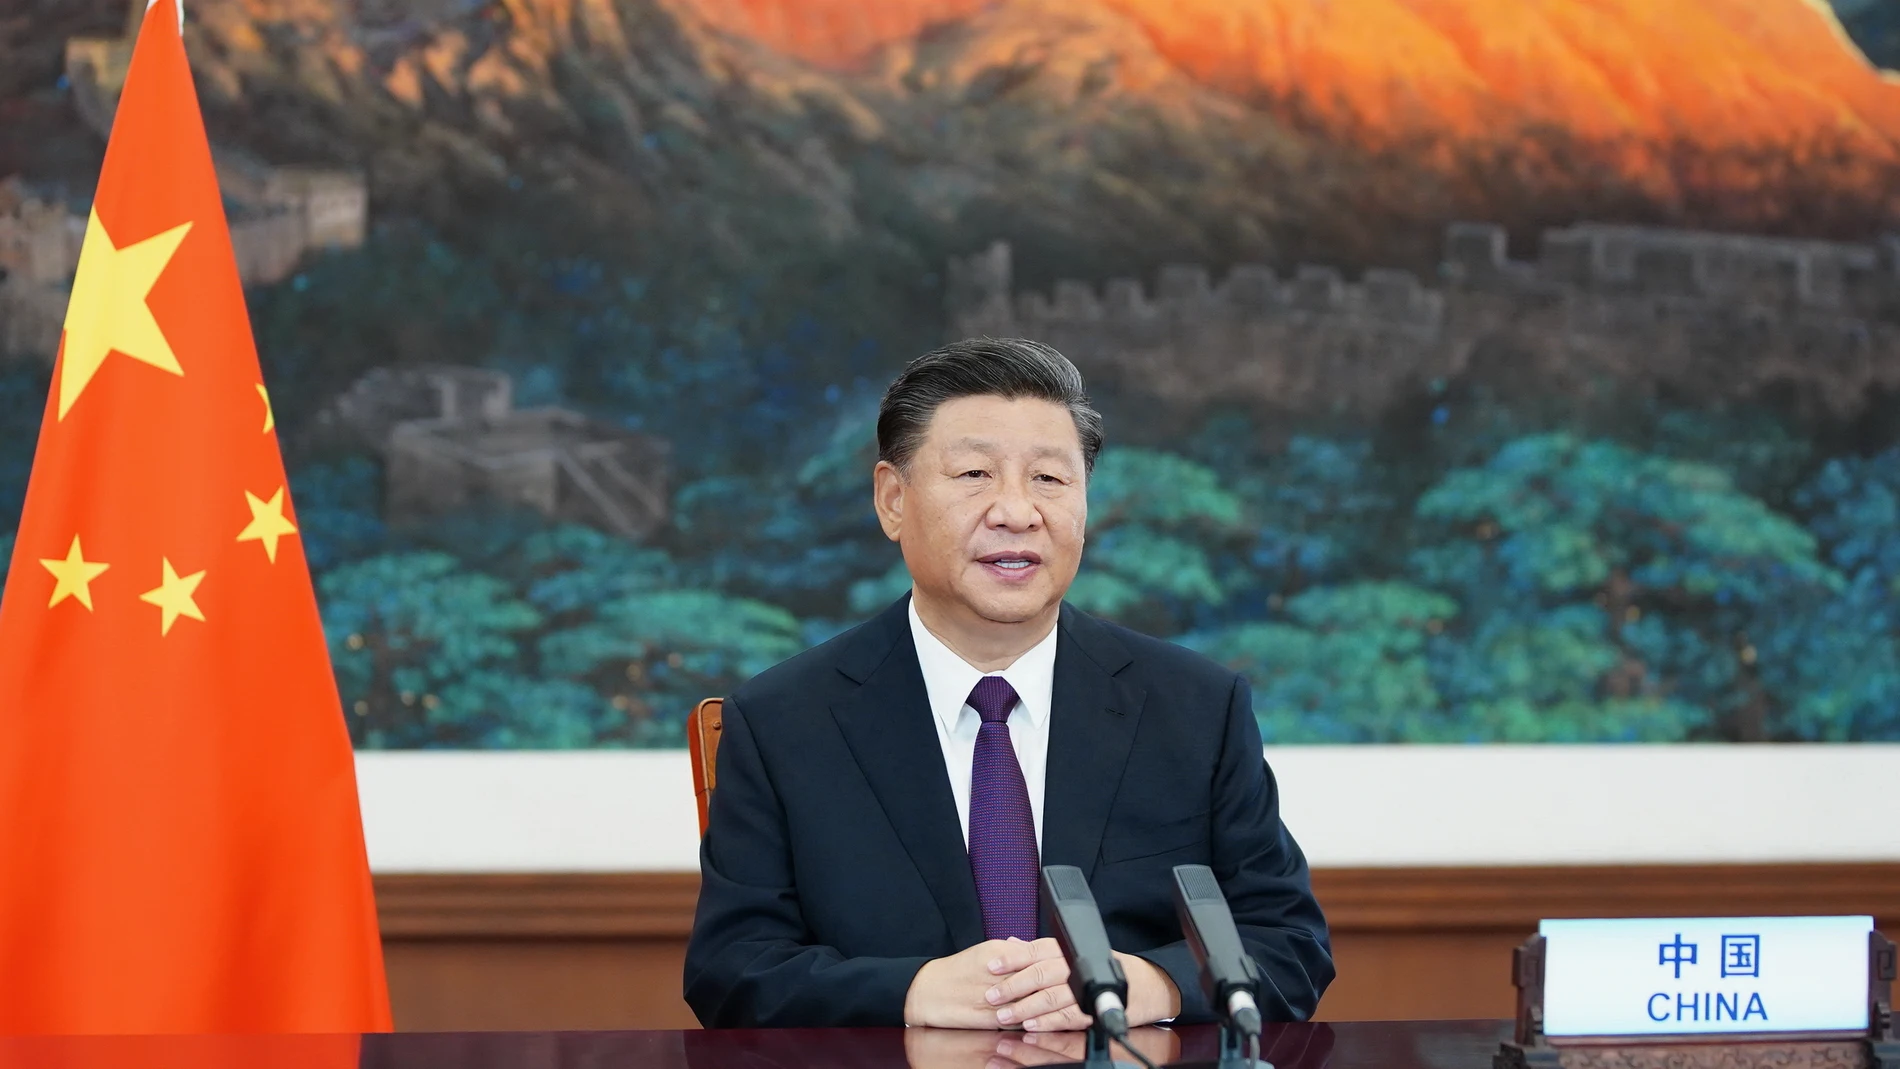 El presidente chino, Xi Jinping, pronuncia un discurso en una reunión de alto nivel celebrada el 21 de septiembre por videoconferencia para conmemorar el 75° aniversario de la ONU